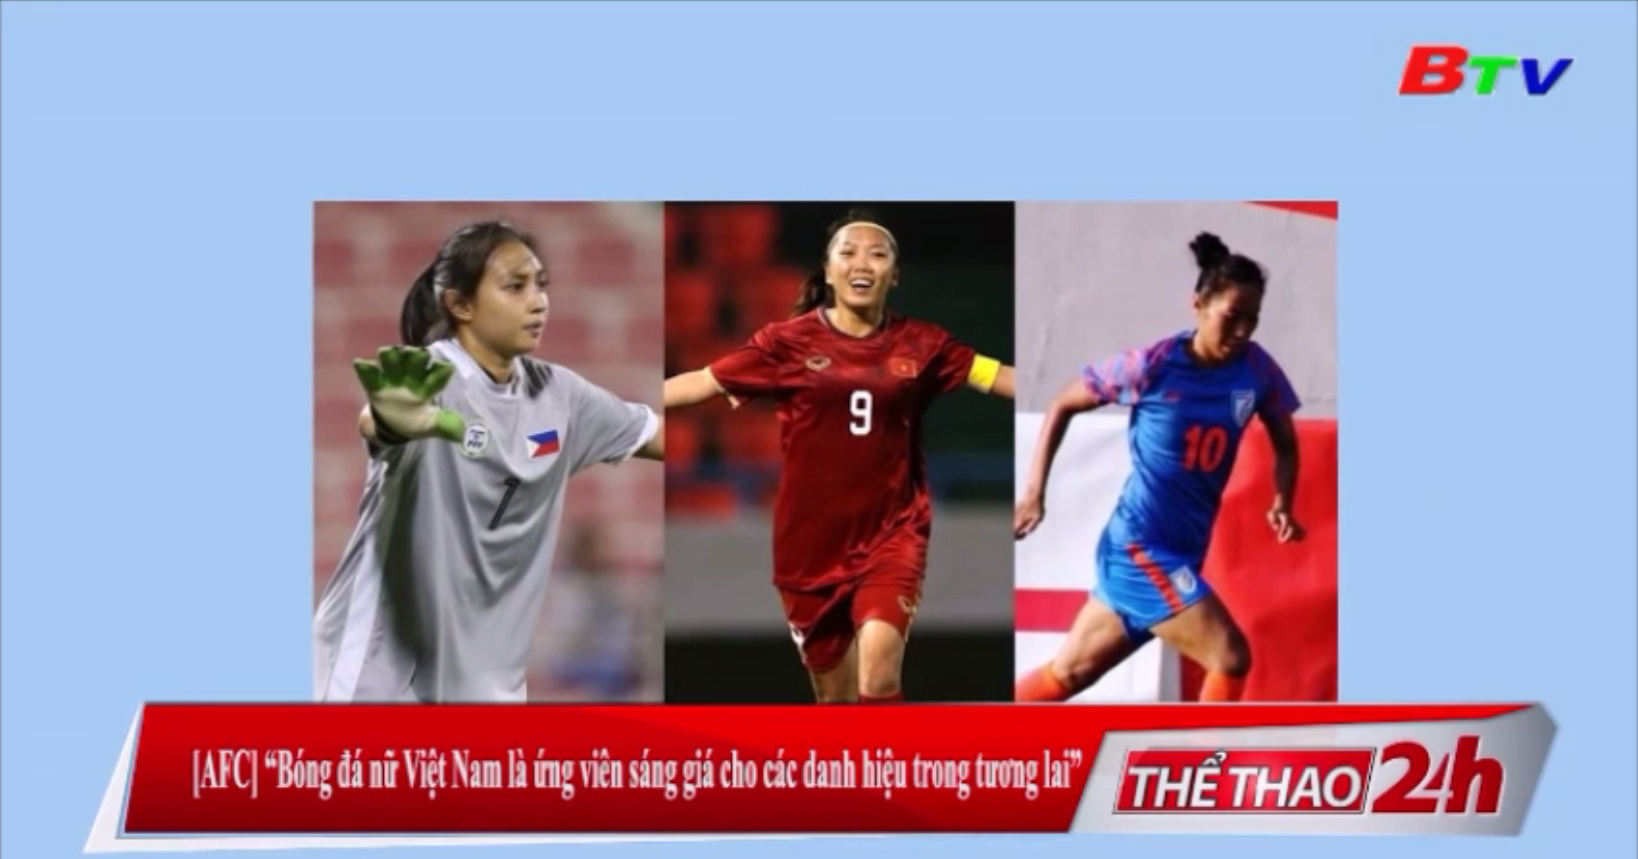 AFC - Bóng đá nữ Việt Nam là ứng viên sáng giá cho các danh hiệu trong lương lai